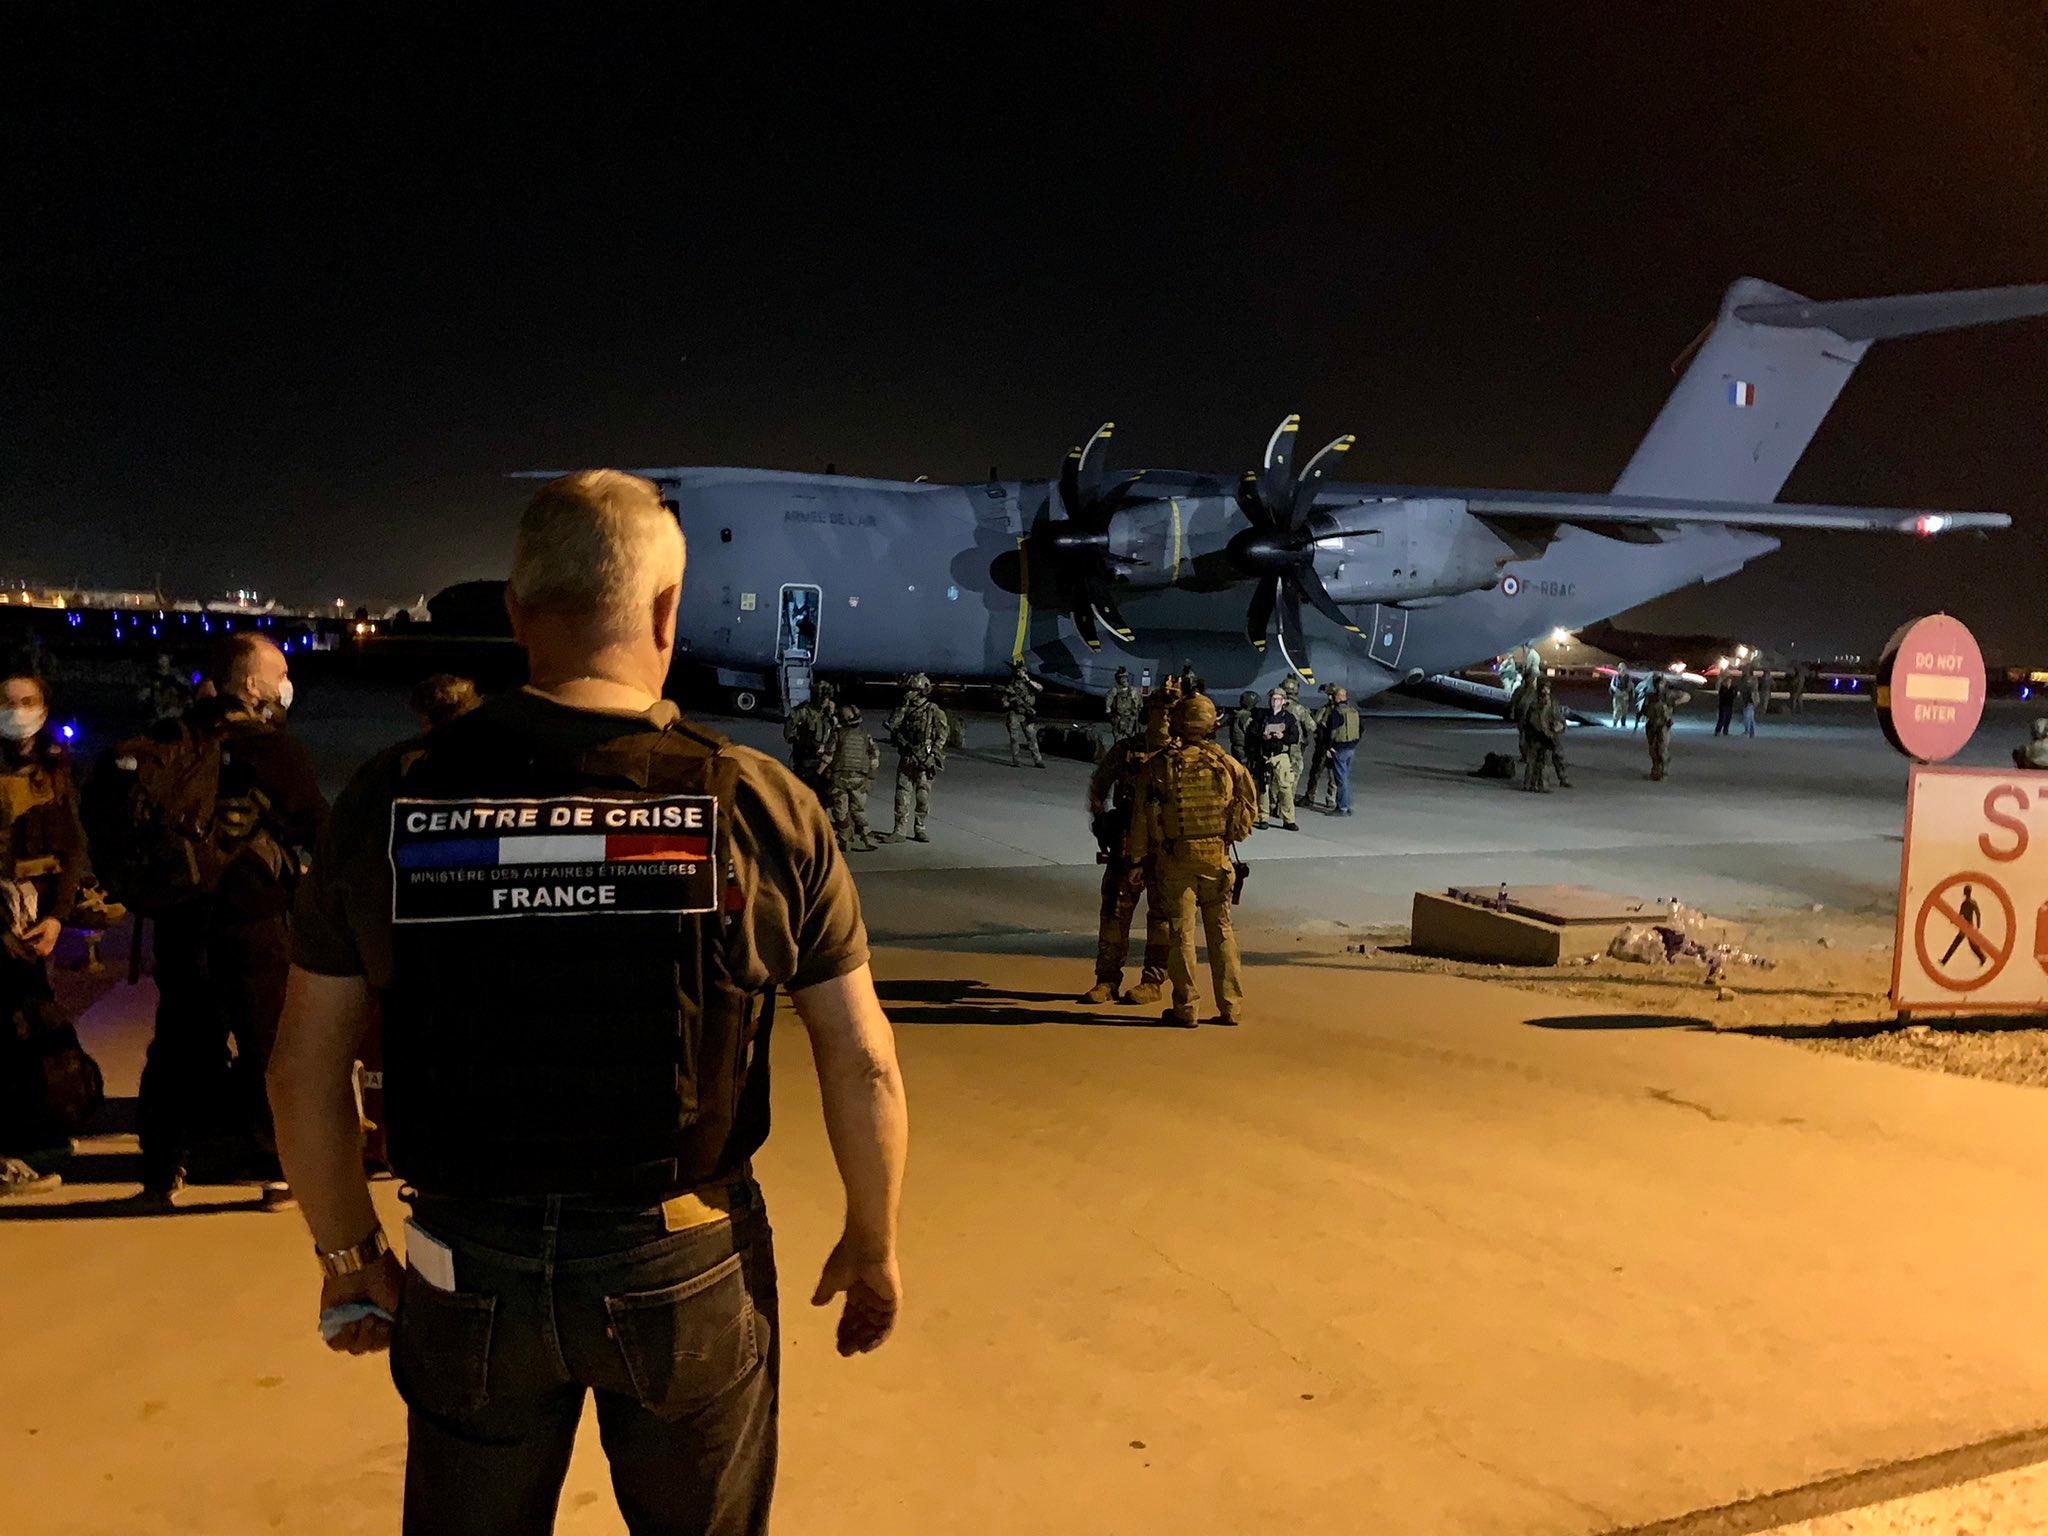 Kaboul, le 18 août 2021. Première évacuation par un A400M des forces françaises. Twitter/@AmbassadeKaboul